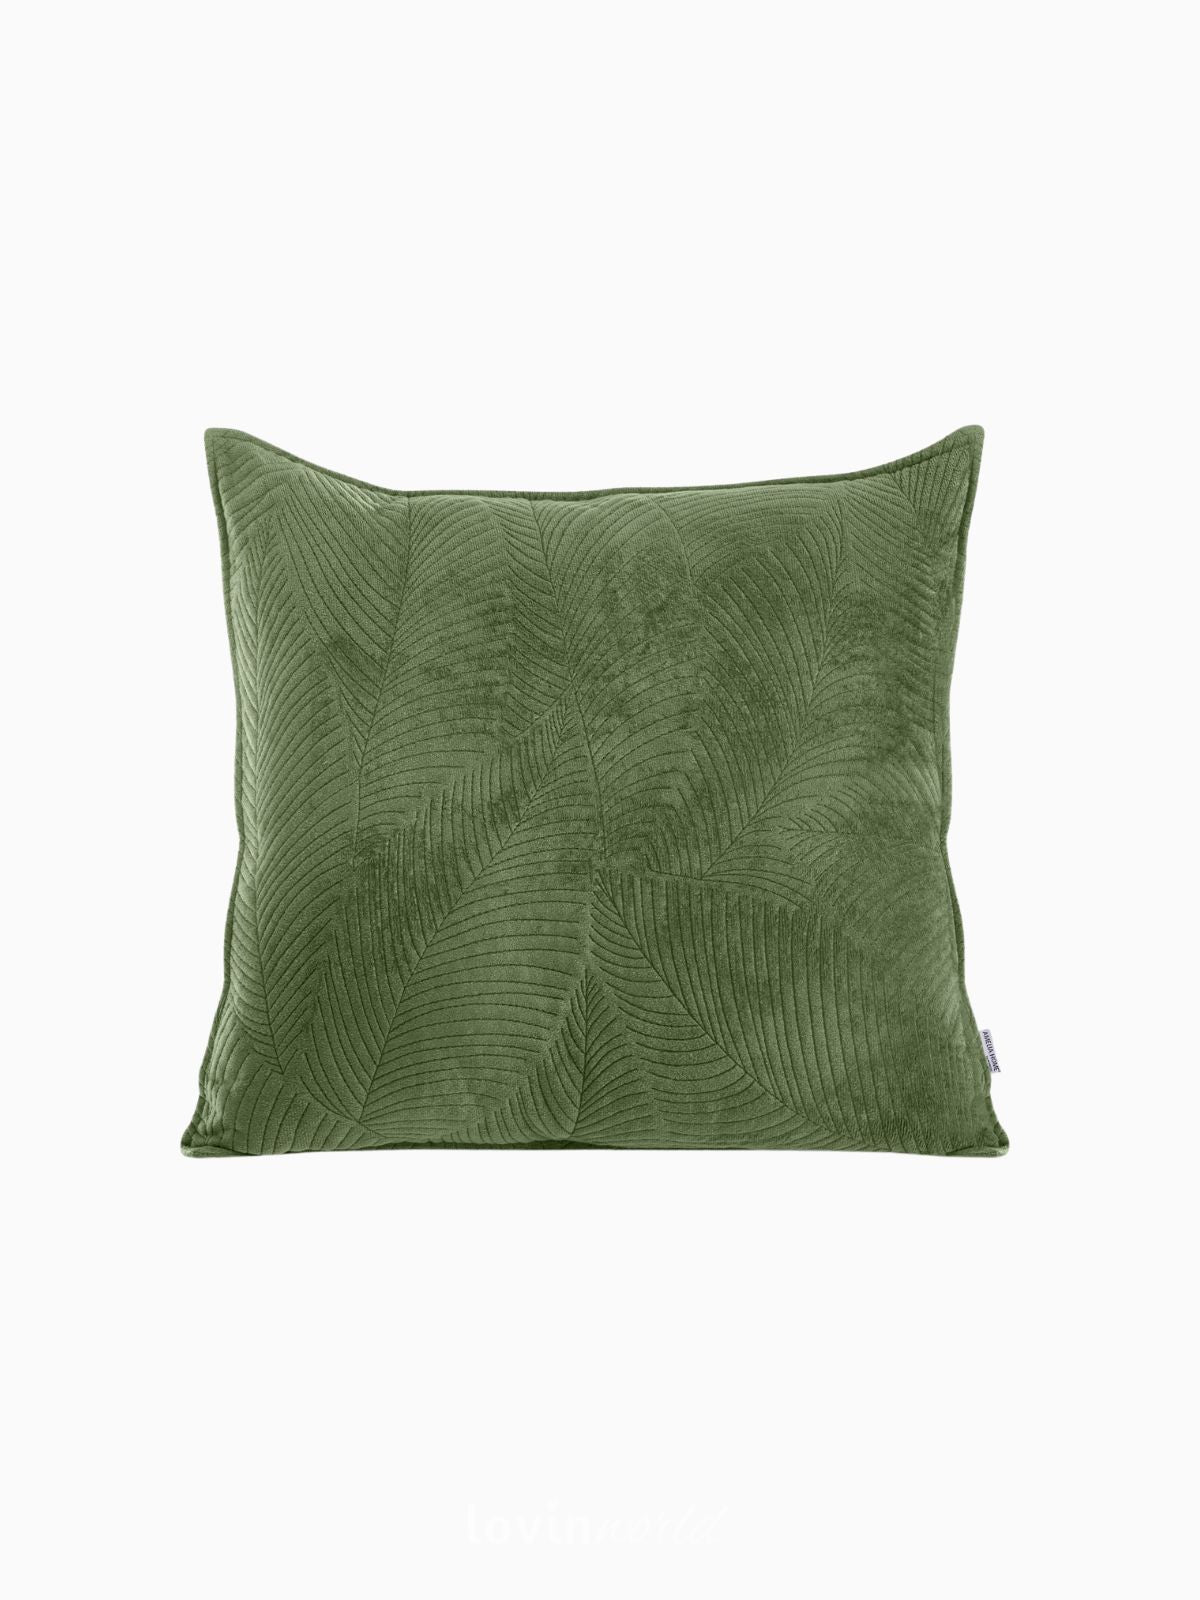 Cuscino decorativo in velluto Palsha, colore verde 45x45 cm.-1